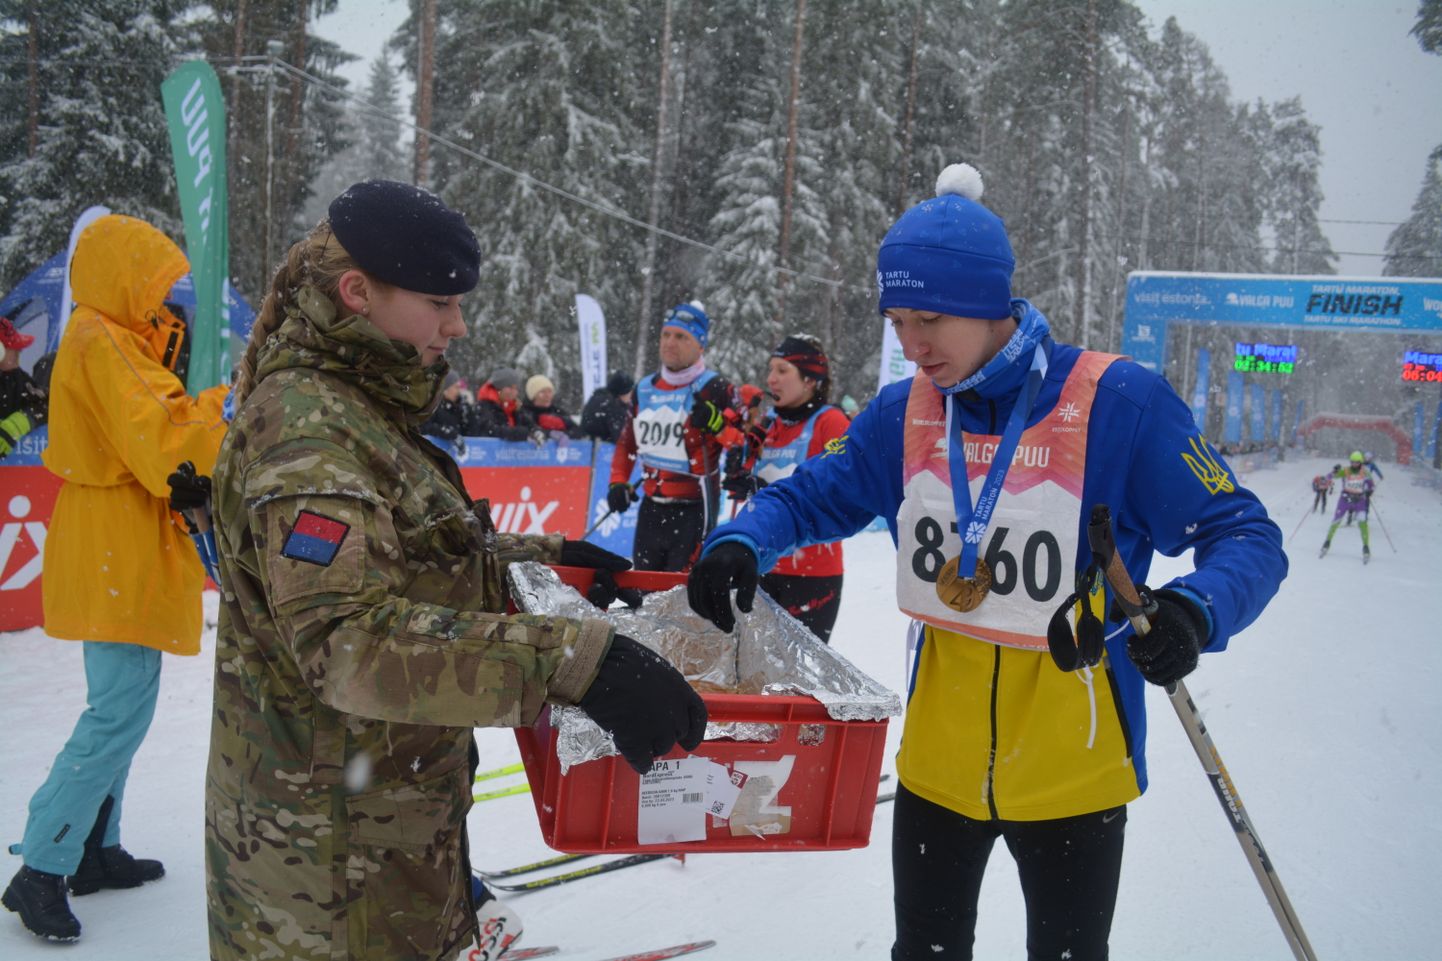 Alles novembris suusatama õppinud 17-aastane ukrainlane Ivan Andrushchenko lõpetas ülemöödunud nädalal Tartu maratoni 31-kilomeetrise distantsi korraliku ajaga 2:32.41, mis andis talle 750 osaleja seas 113. koha.